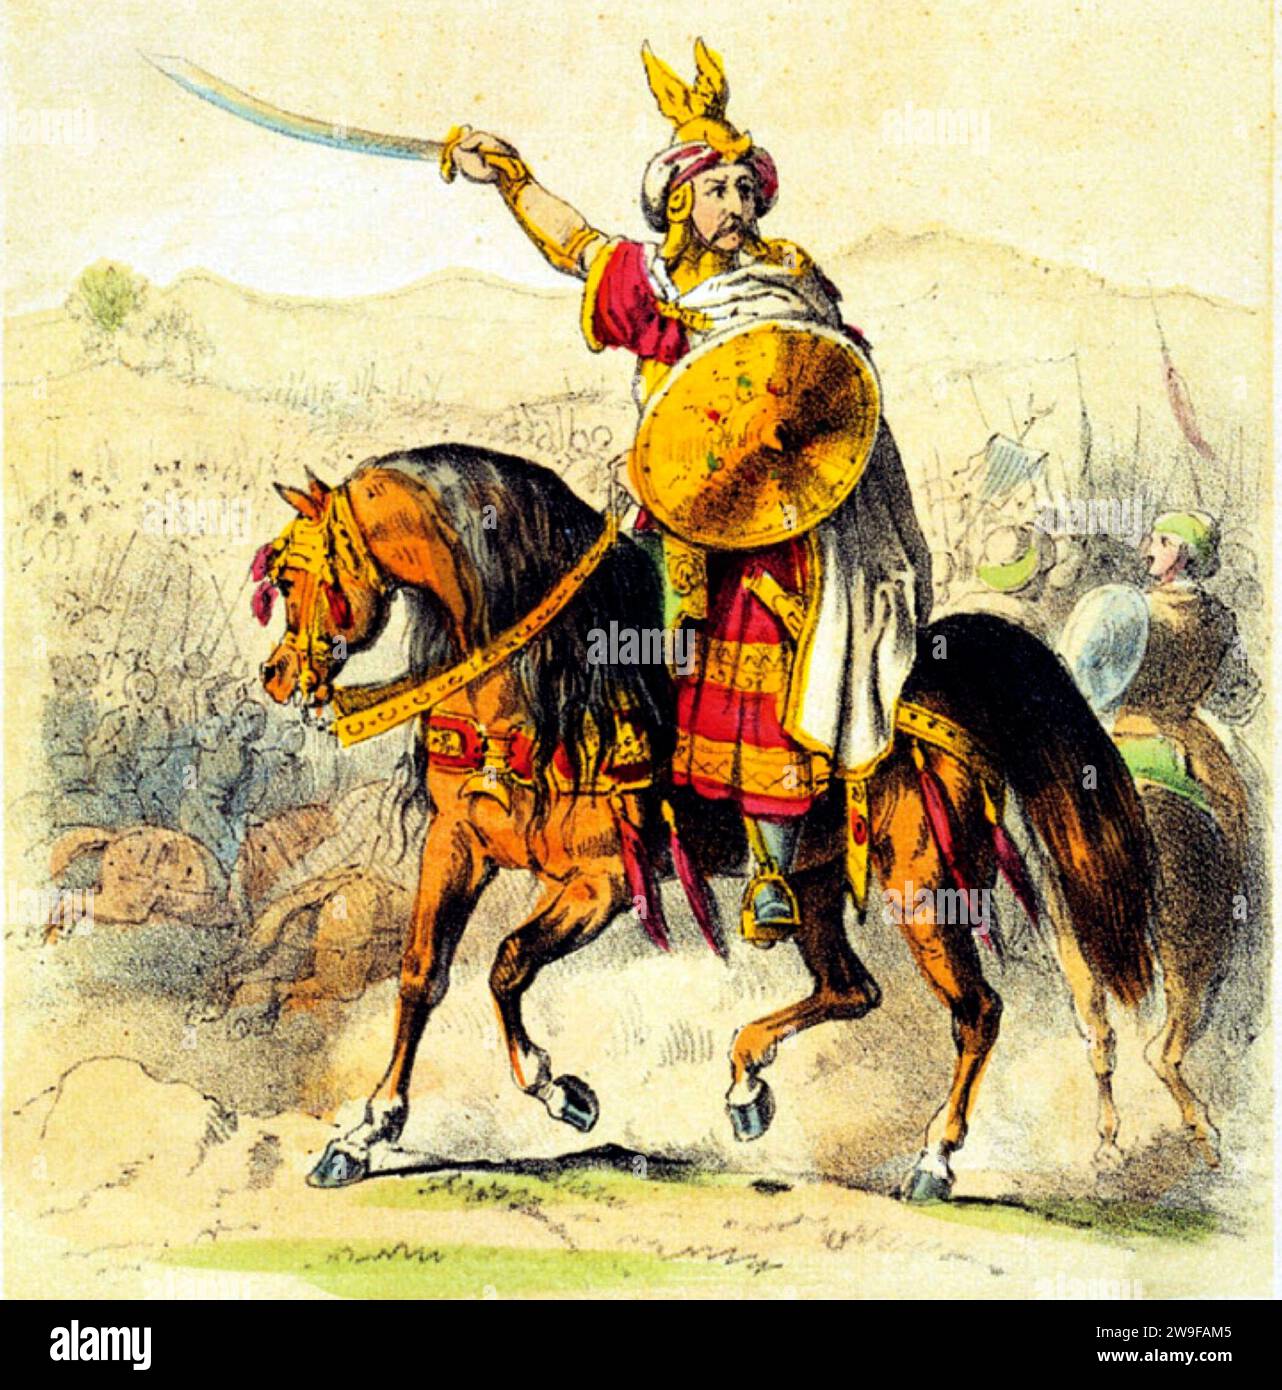 Ṭāriq ibn Ziyād, bekannt als Tarik, war ein Befehlshaber der Umayyaden, der die muslimische Eroberung des westgotischen Hispaniens in den Jahren 711–718 n. Chr. initiierte. Stockfoto